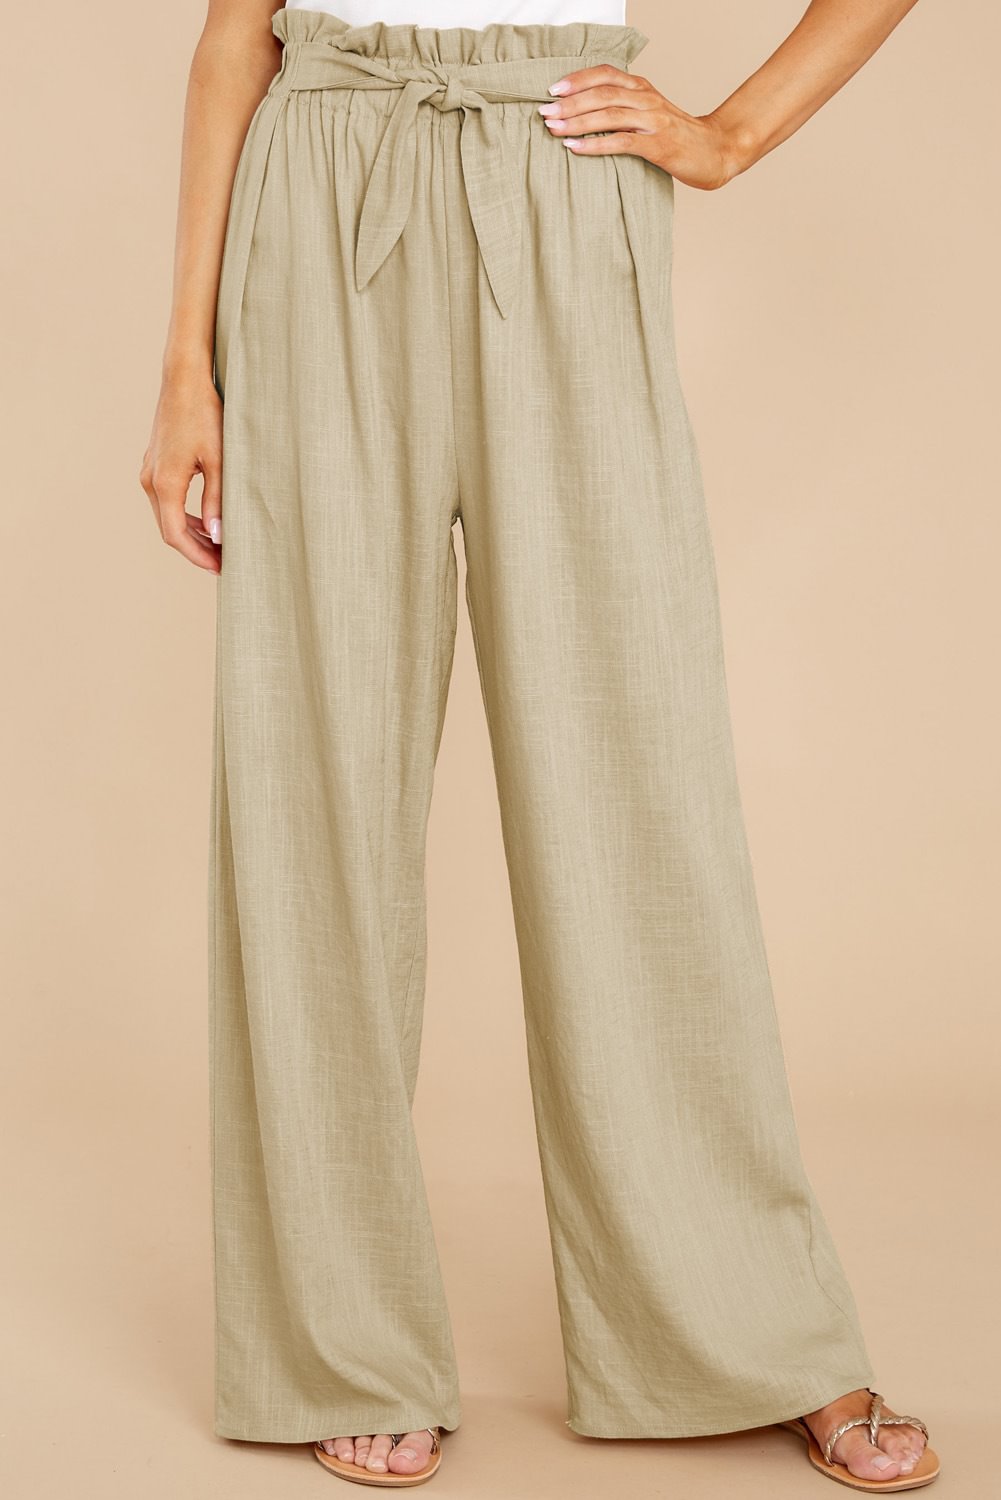 Women's Plus Size Loose Cotton Linen Casual Pants